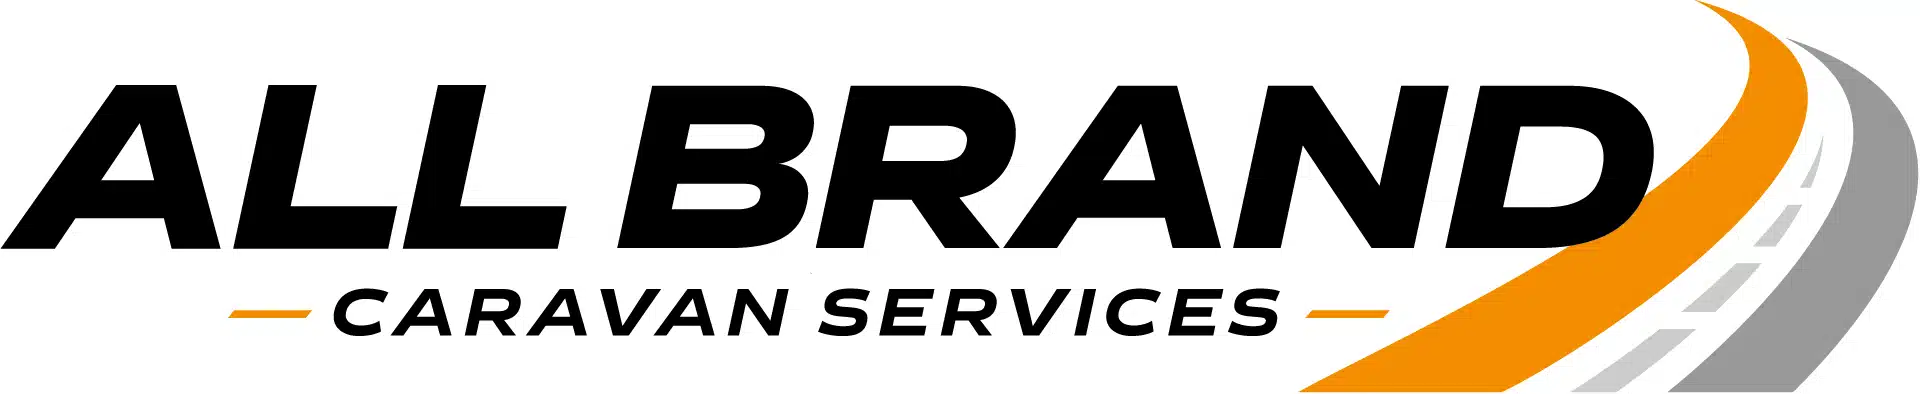 All Brand Caravans logo